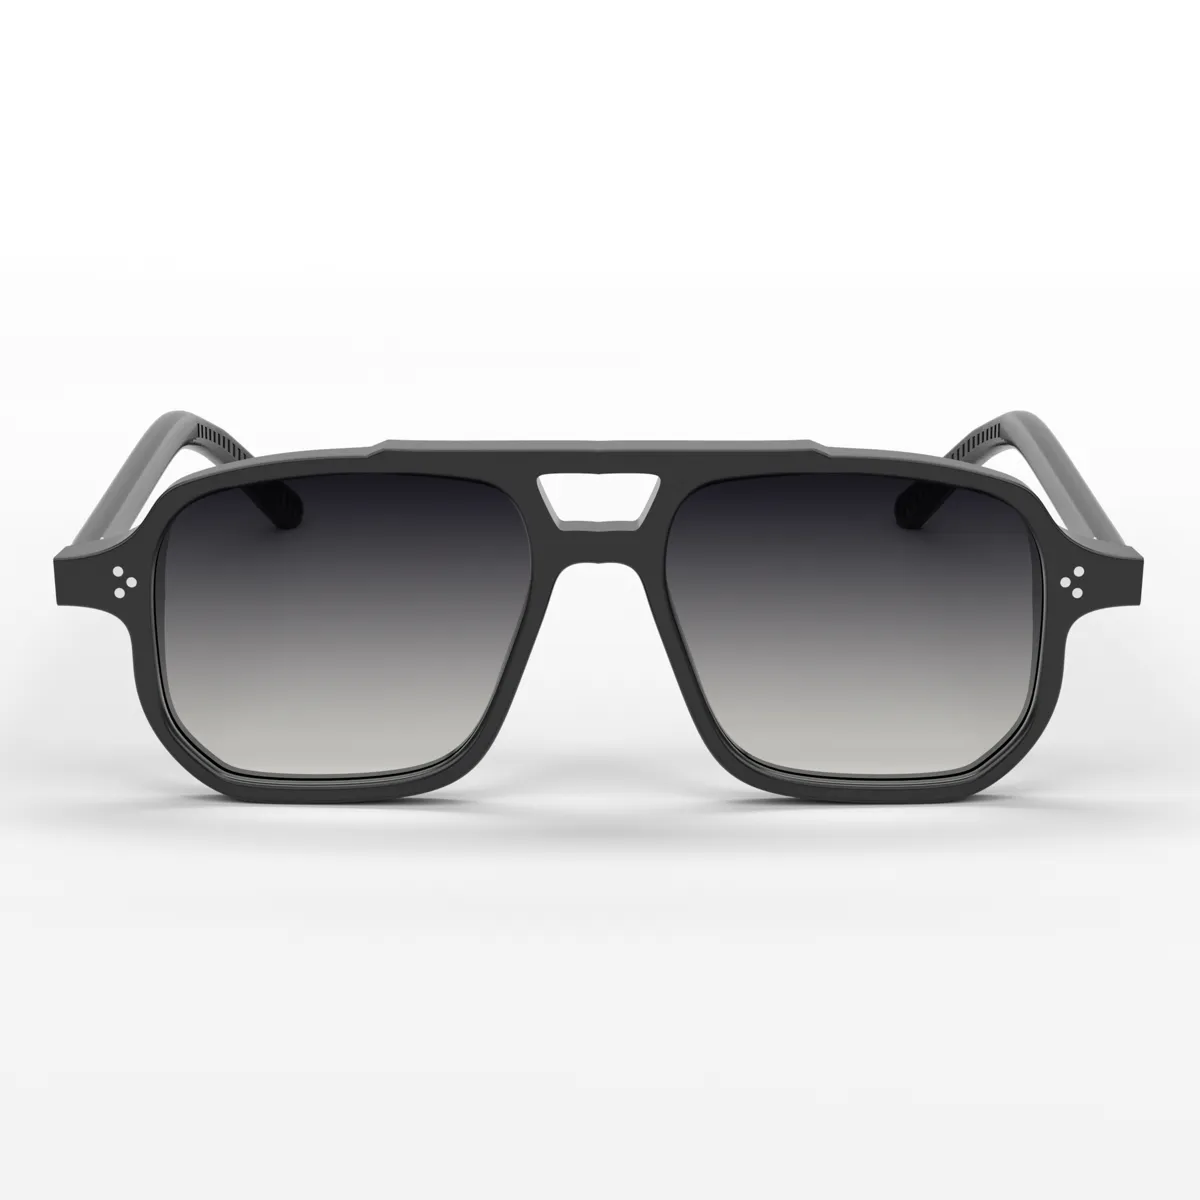 Aldabra Aviator Sunglasses